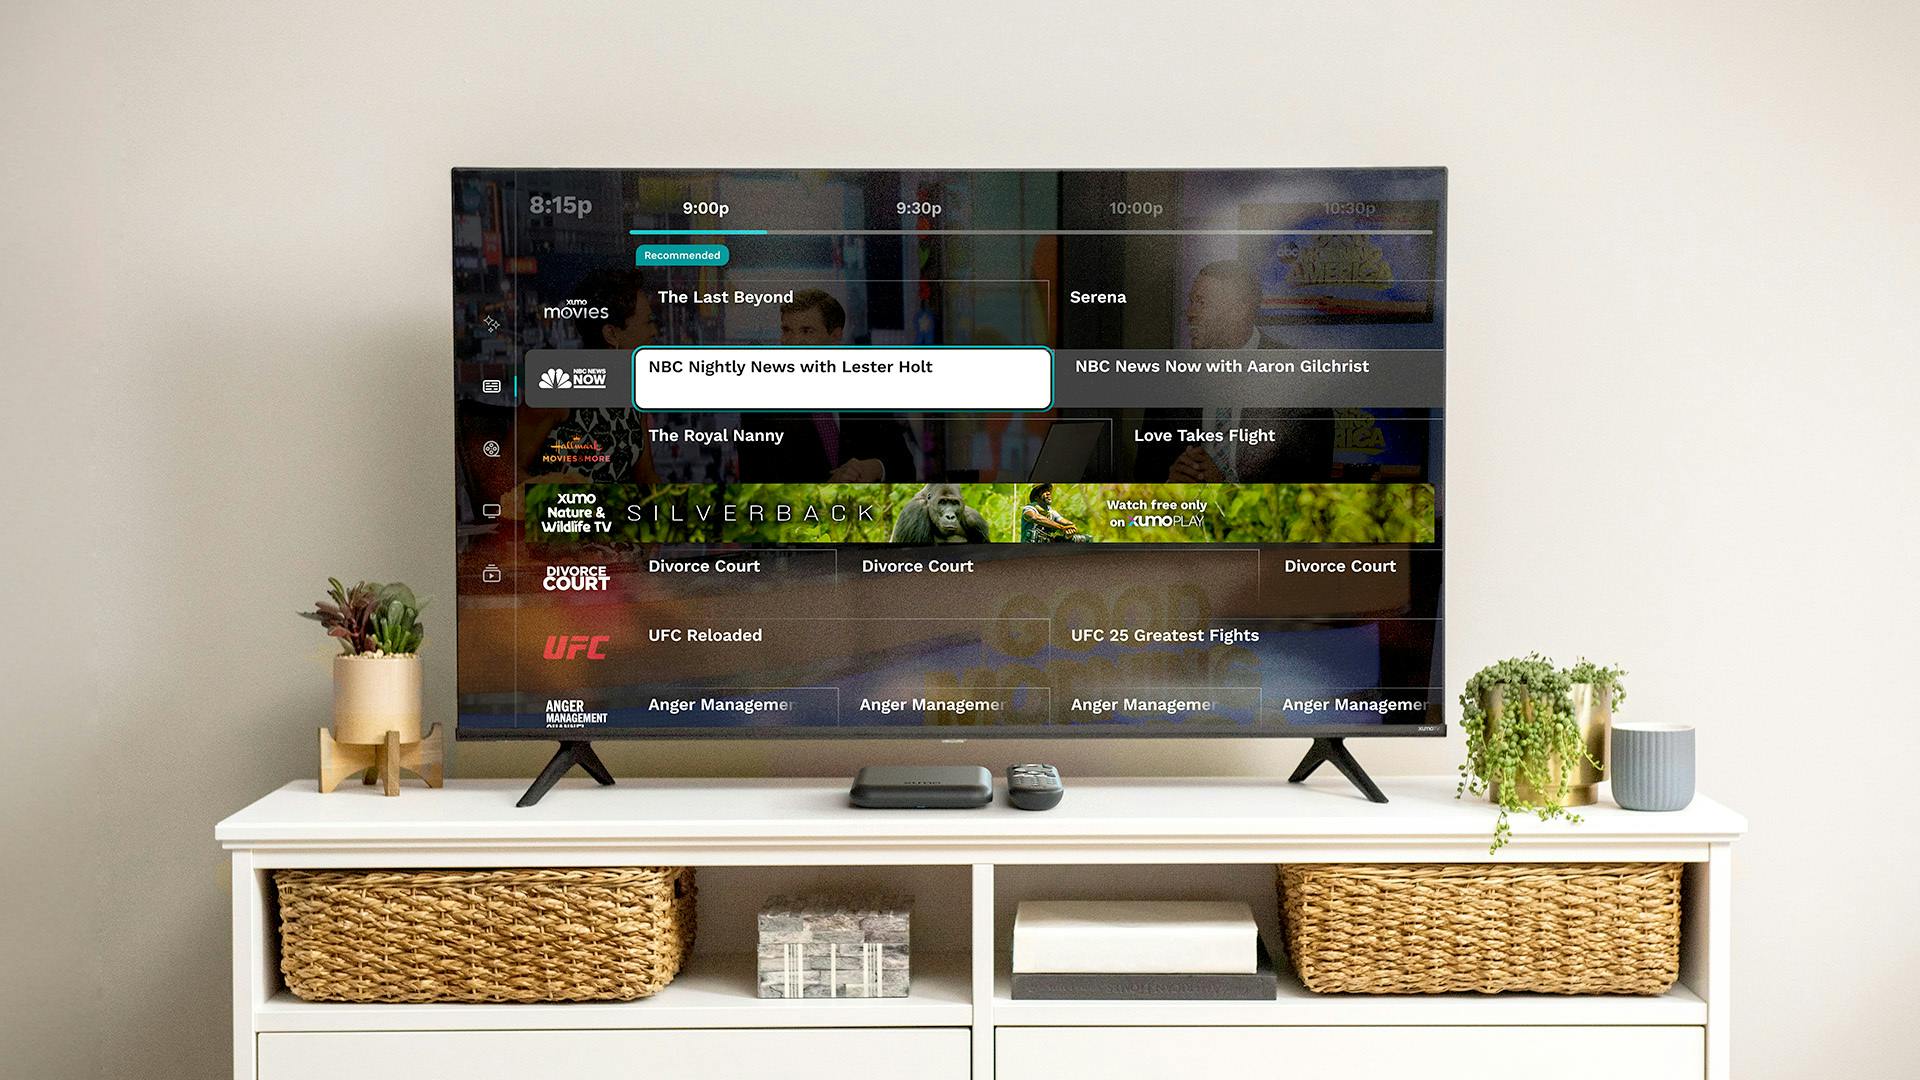 Una imagen de un televisor utilizando la función de guía de televisión de Xumo Play.